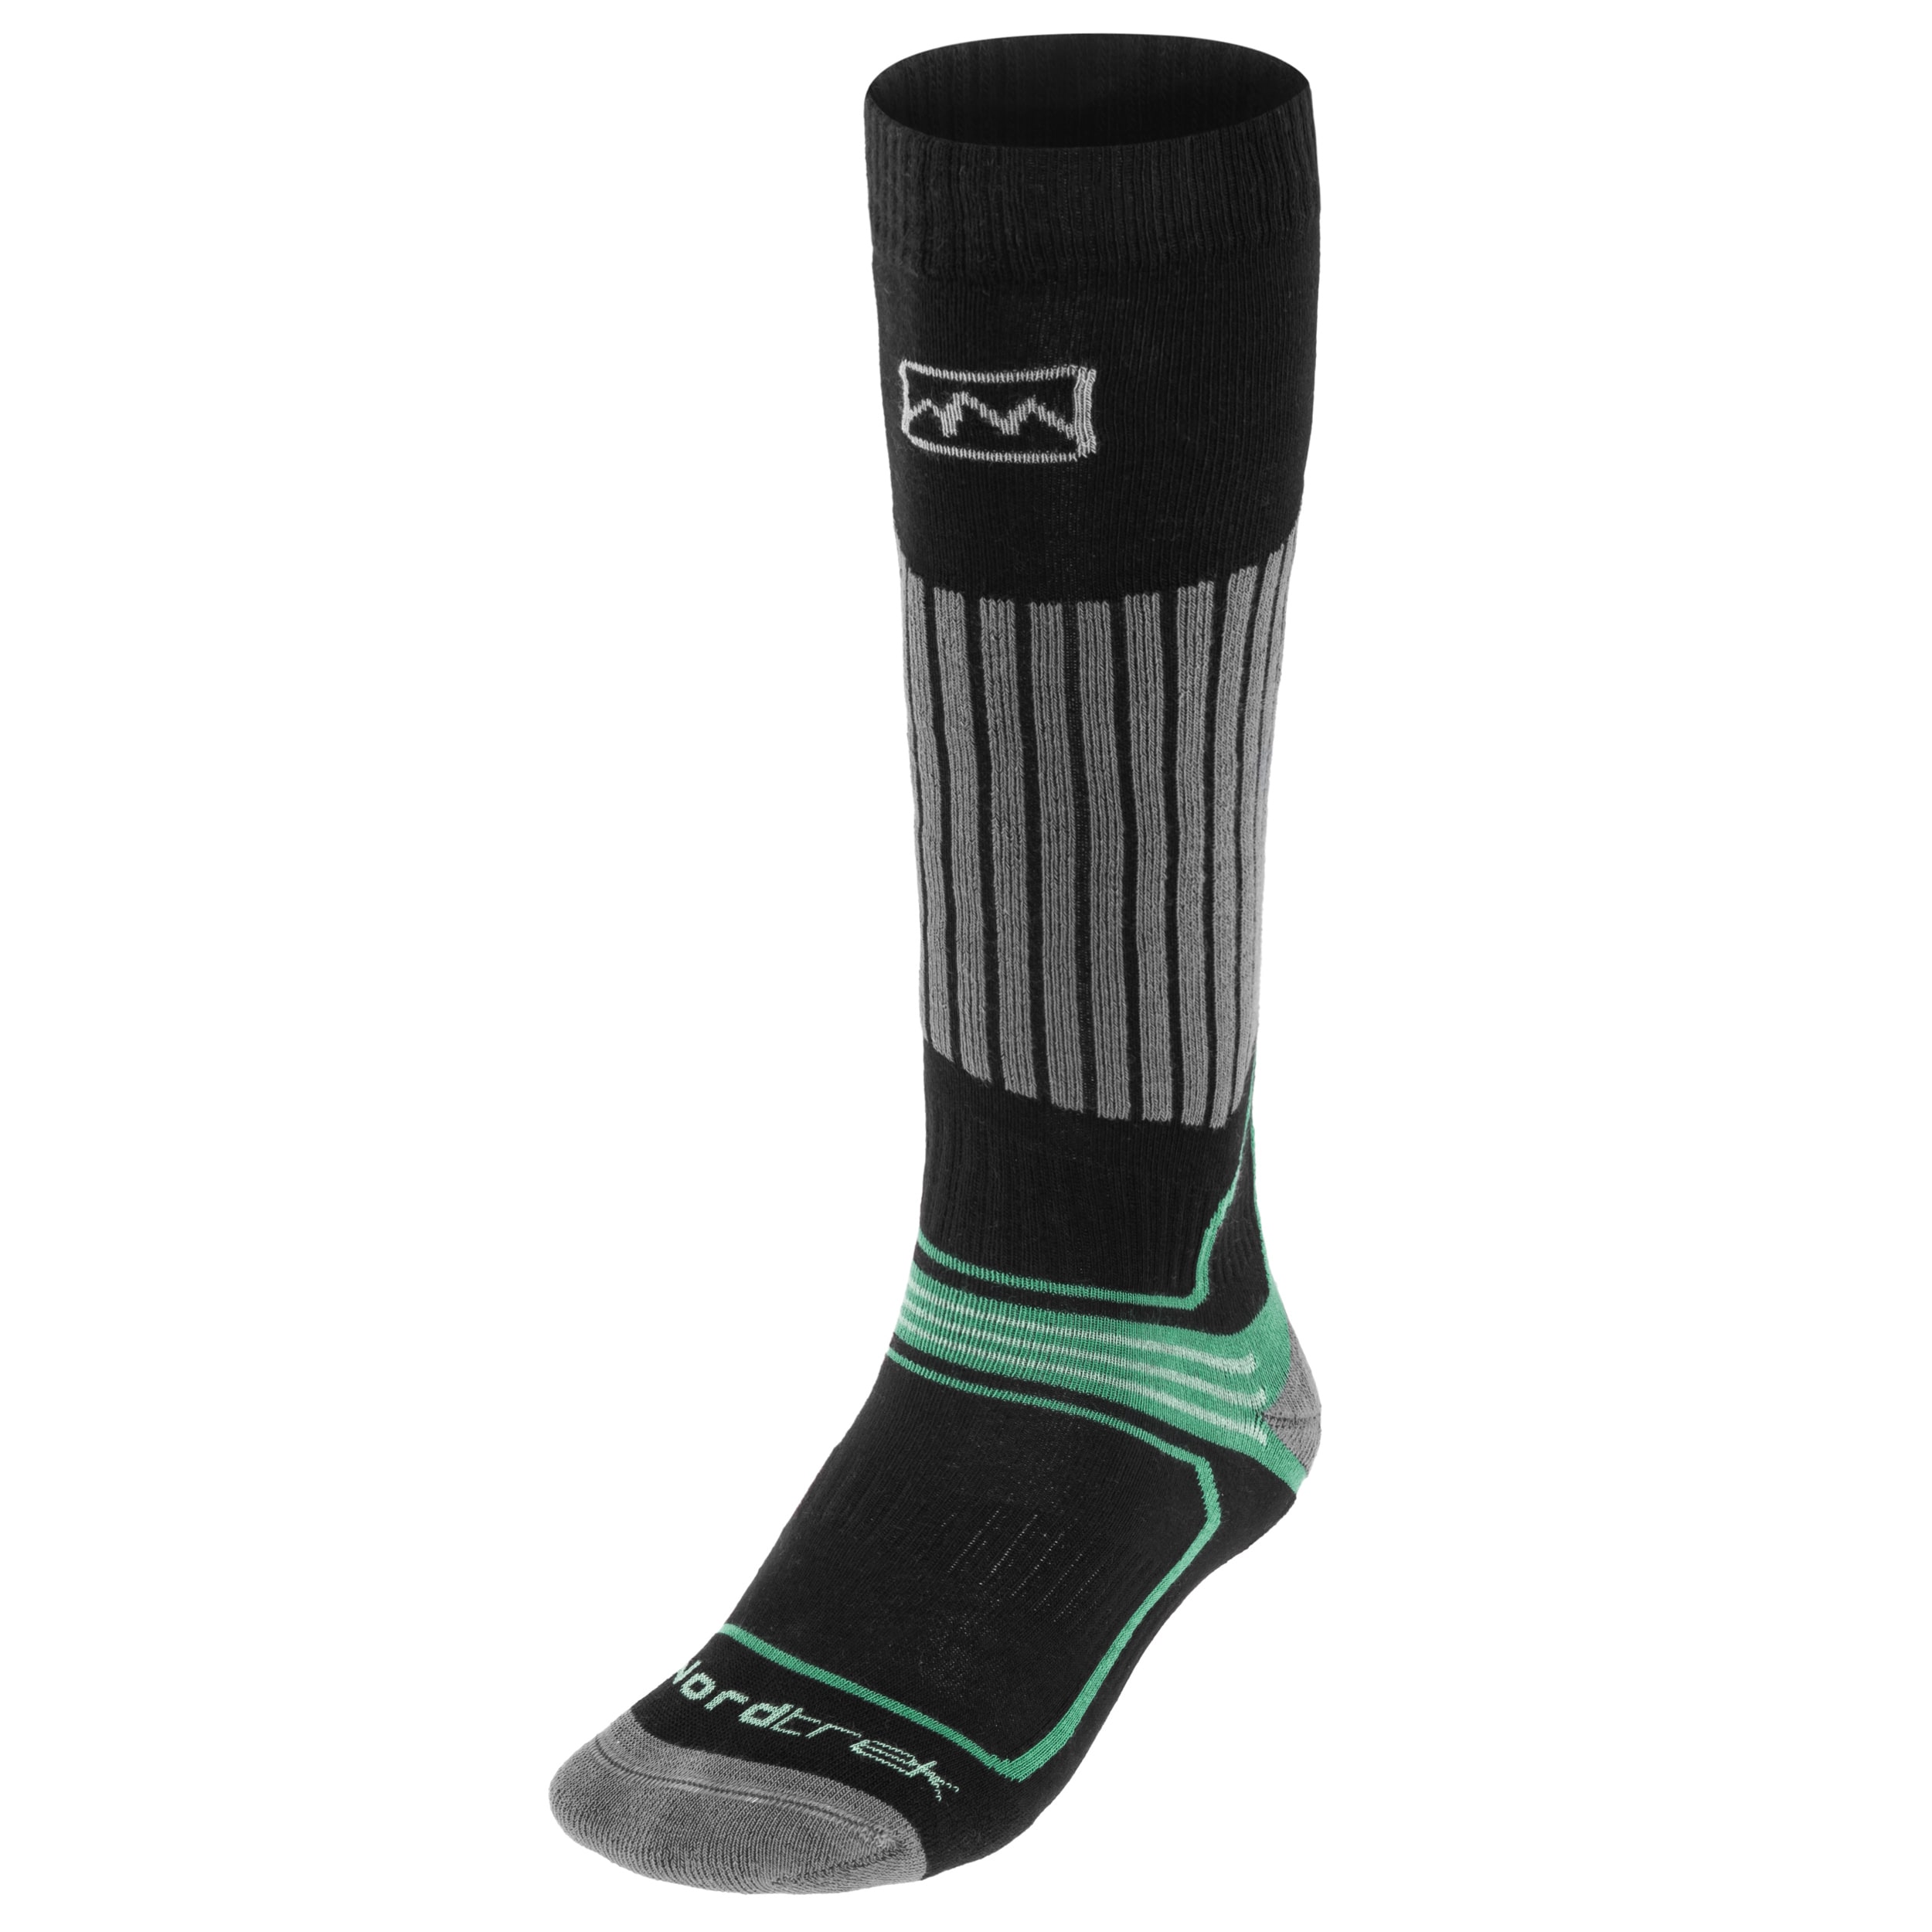 Skarpety FreeNord Kobuk Ski Socks - Black/Green